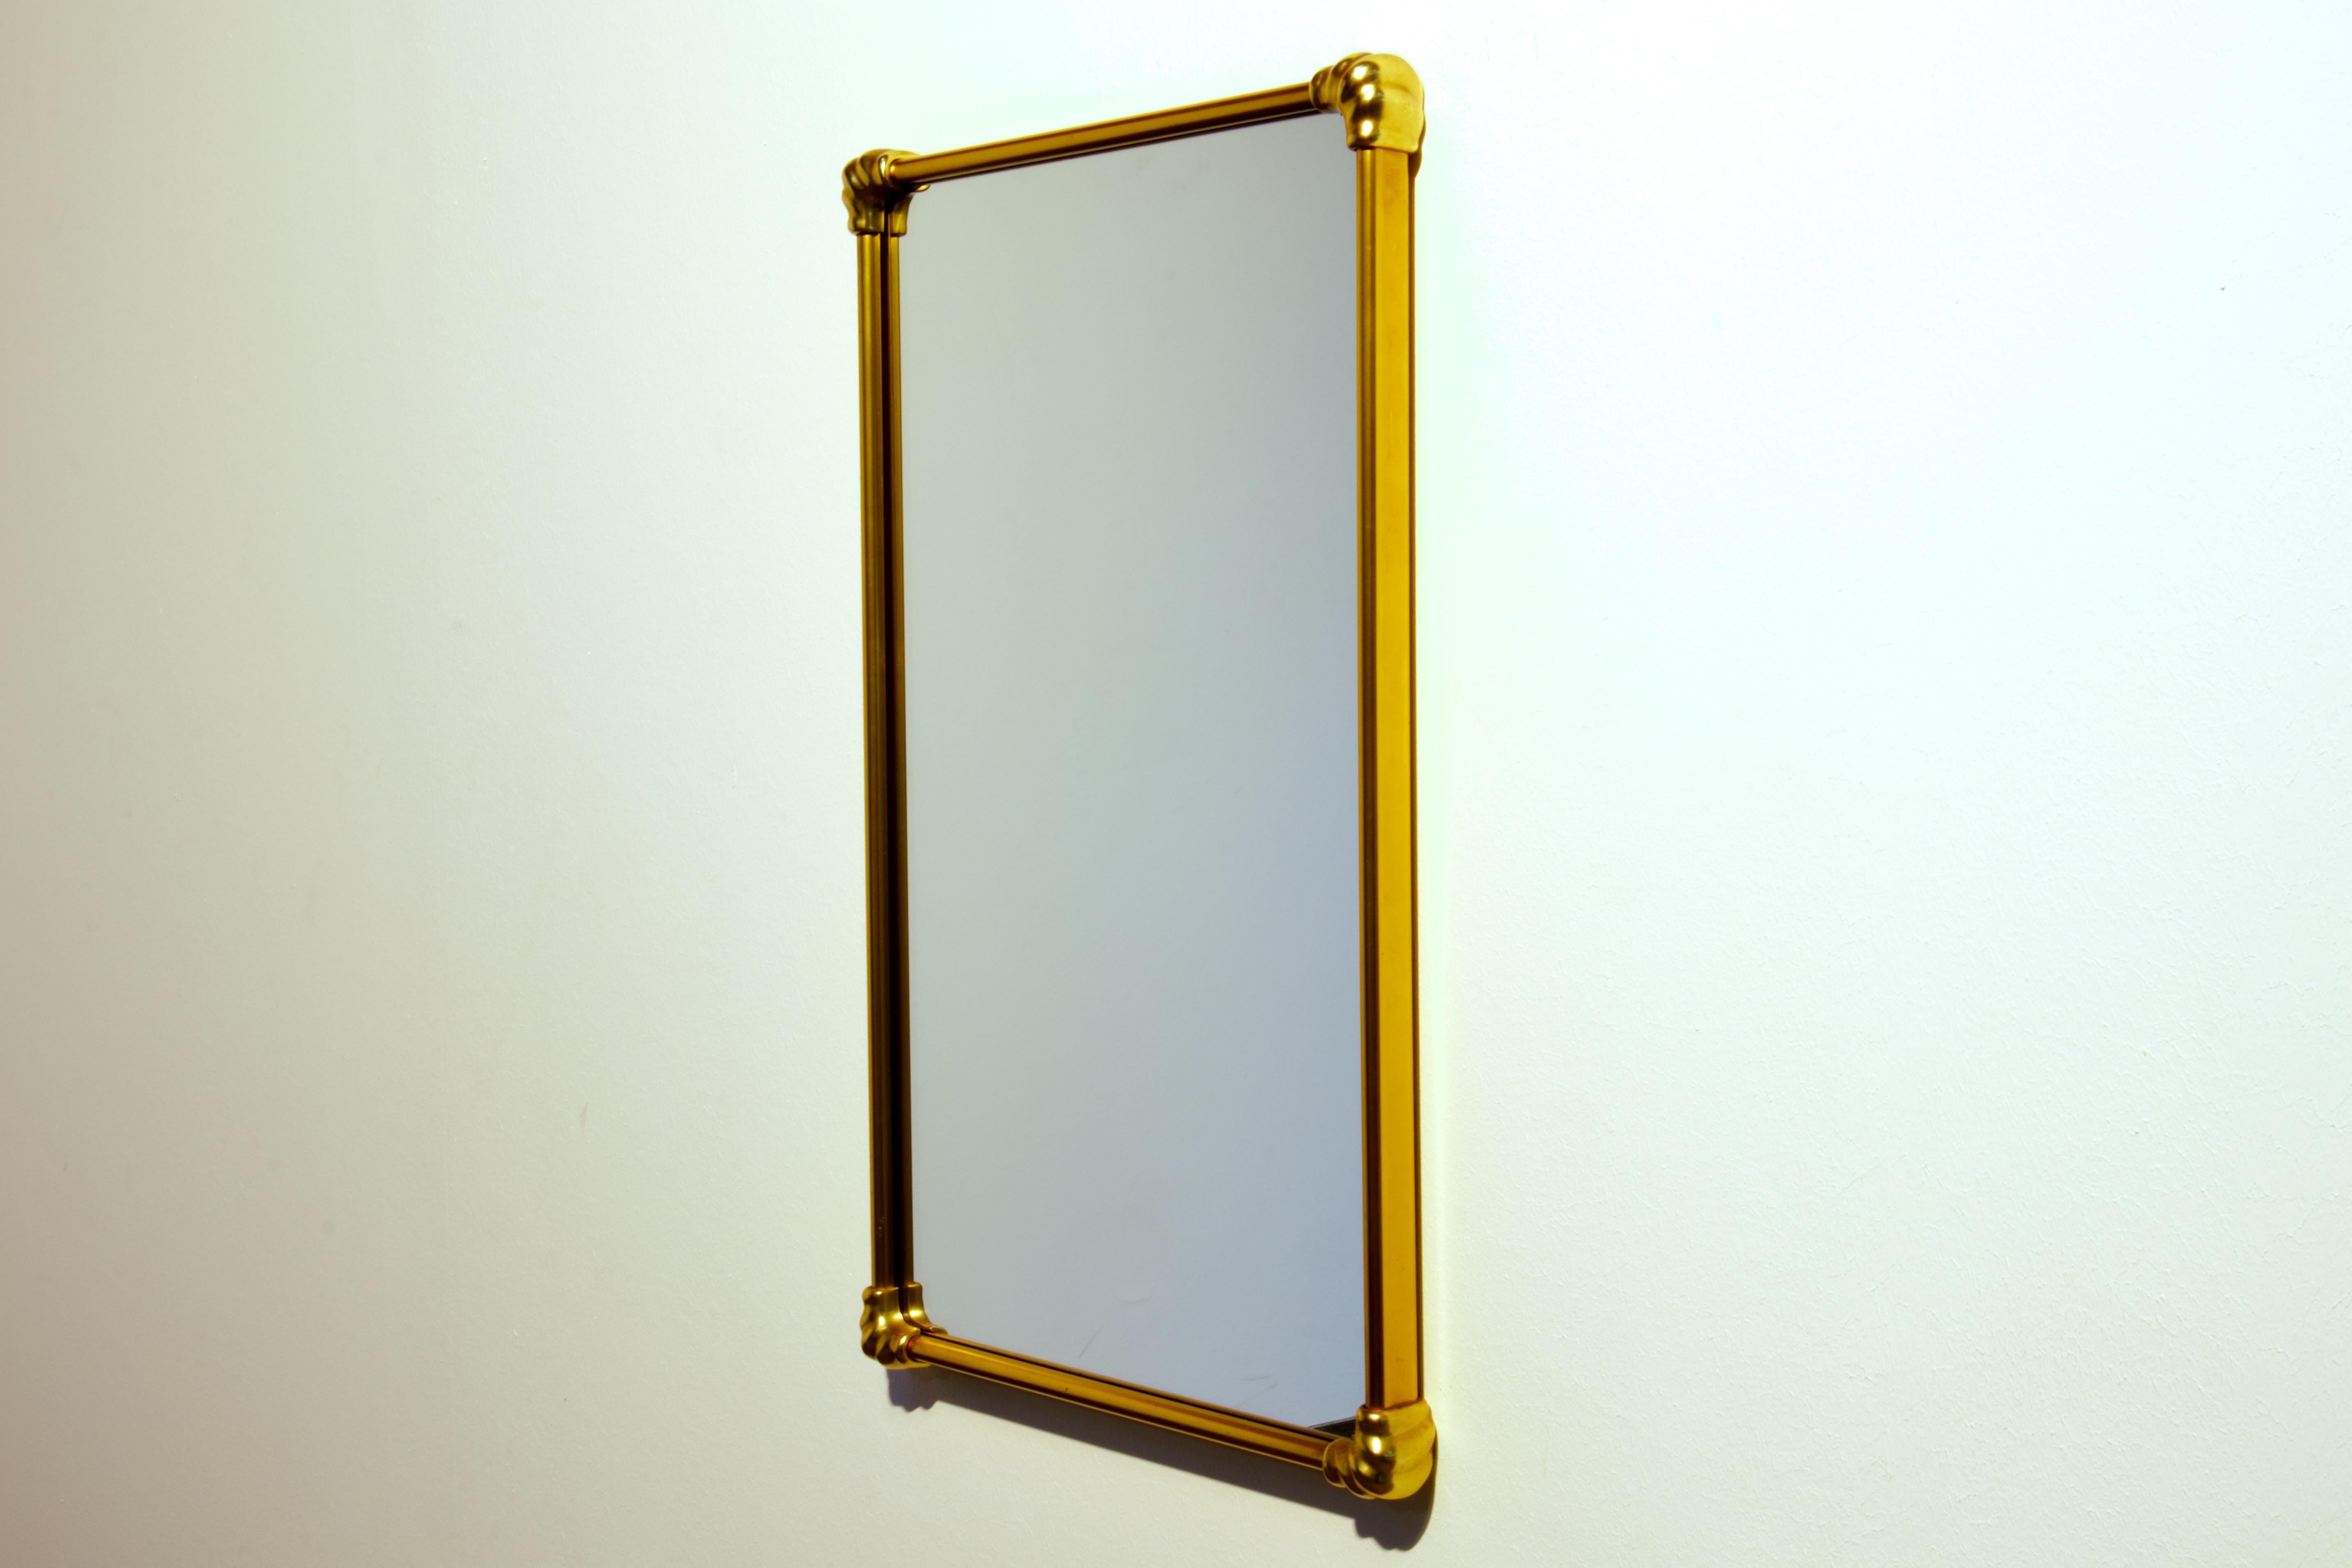 Wandspiegel aus patiniertem Messing aus der Zeit von Gio Ponti, Mid-Century Modern. Hergestellt in Italien in den 1950er Jahren.

Die Form des Spiegels ist ein Rechteck mit geraden Messing-Seiten und massiven Messing-Eckelementen, die eine elegante,